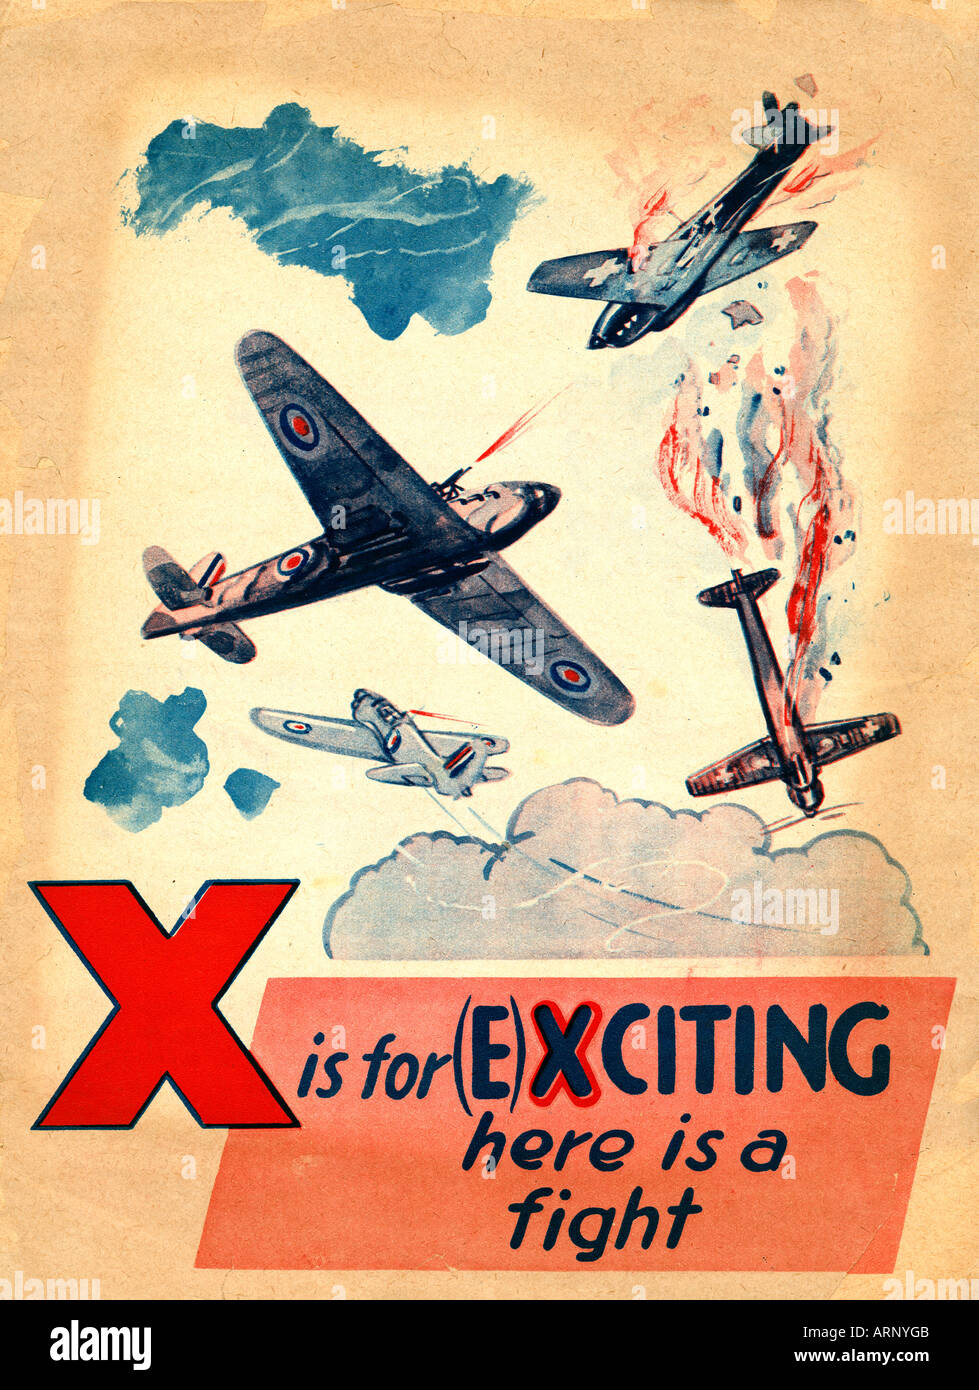 Schlacht von Großbritannien X ist für spannende hier ein Kampf aus einer englischen Alphabet Kinderbuch von der Luftschlacht um England Stockfoto